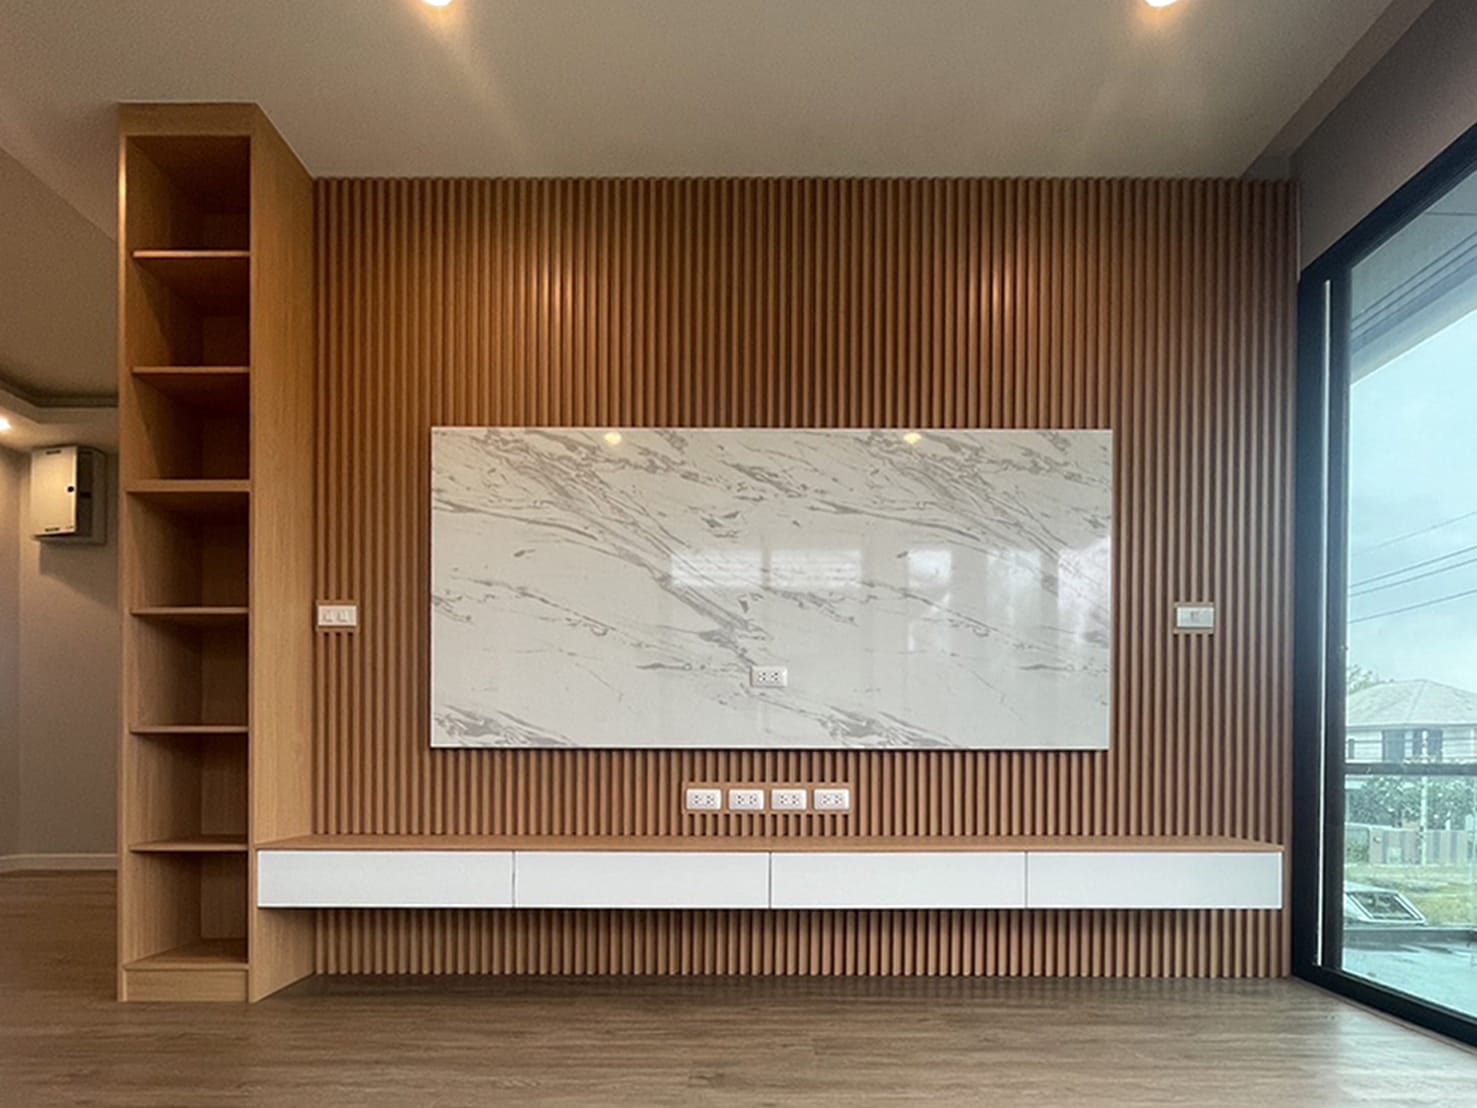 ตู้ TV Built-in โครง HMR เคลือบ Melamine สี Beech + ขาว + Greek Marble